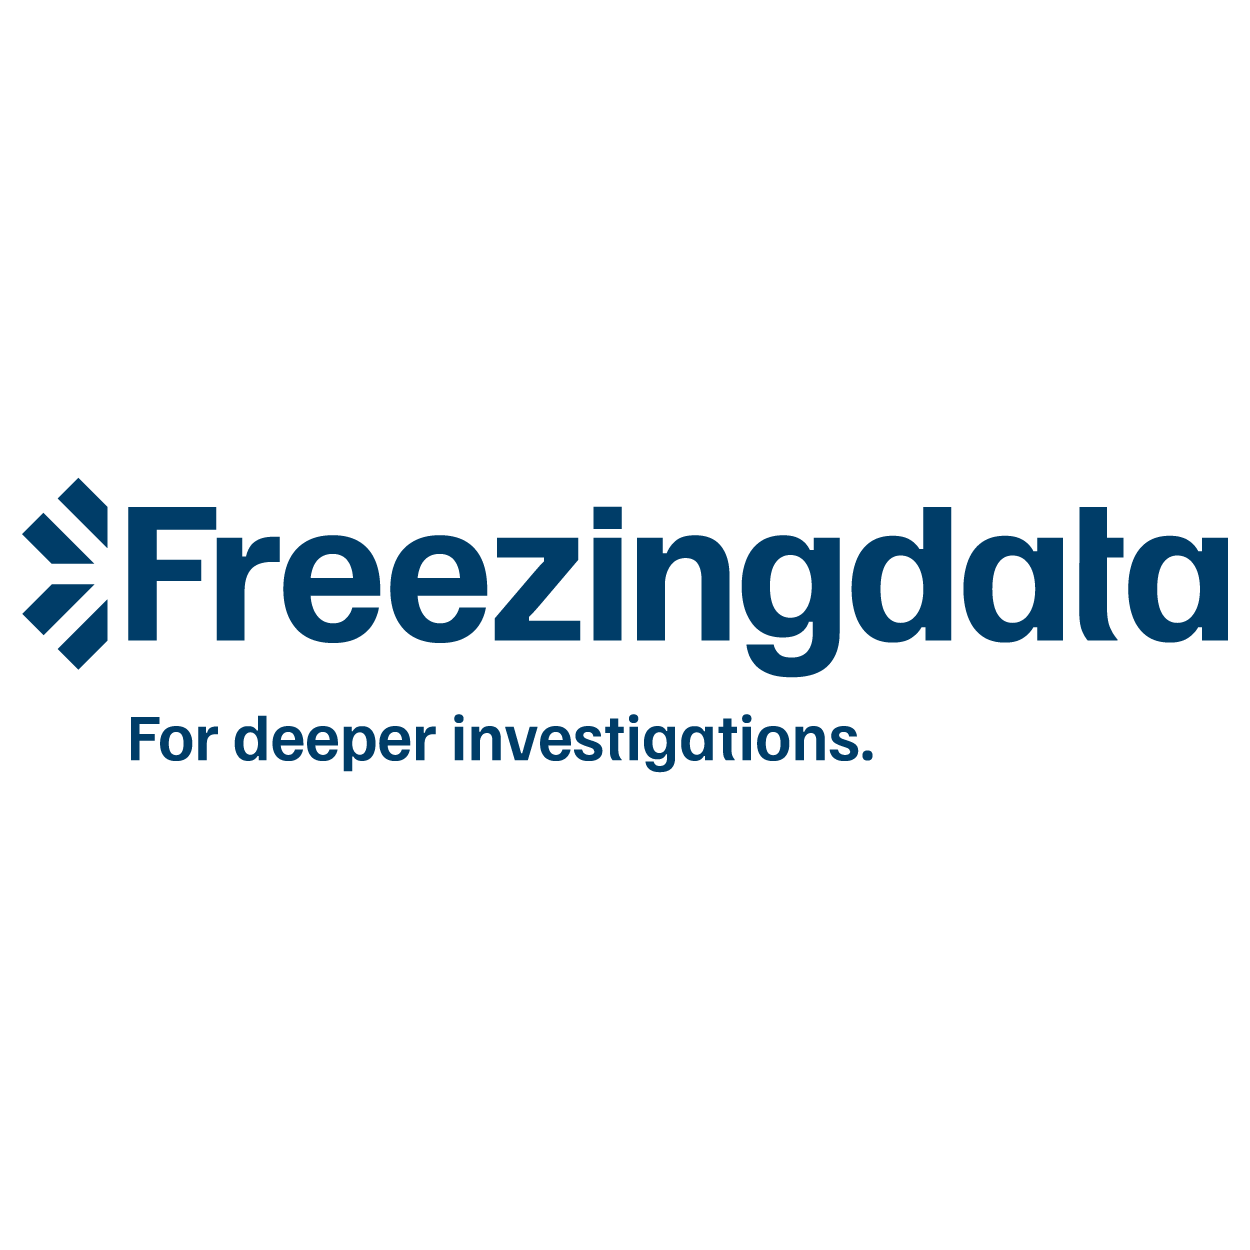 Freezingdata